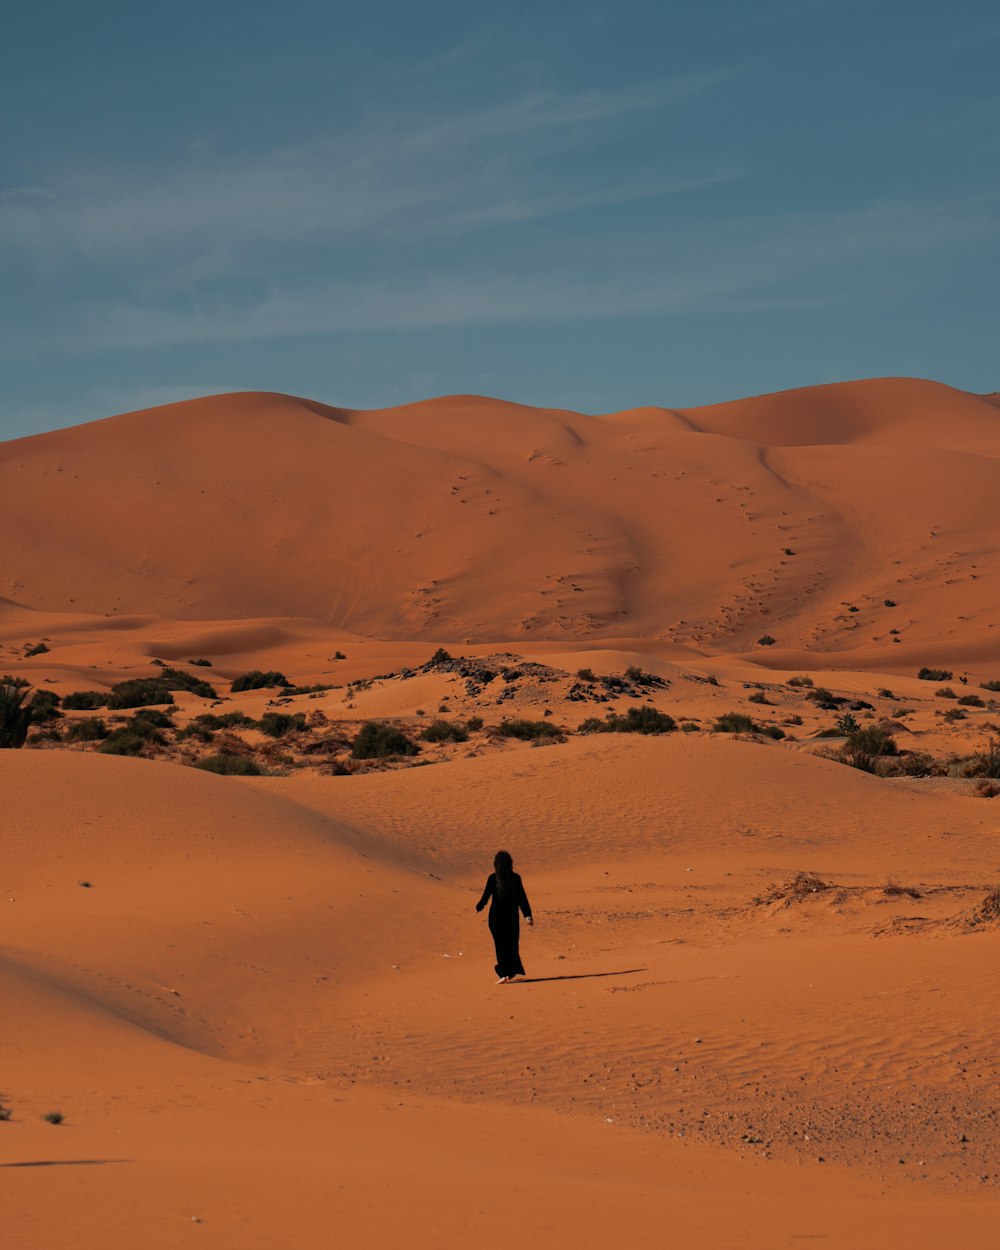 a person walking across a sandy field in the desert